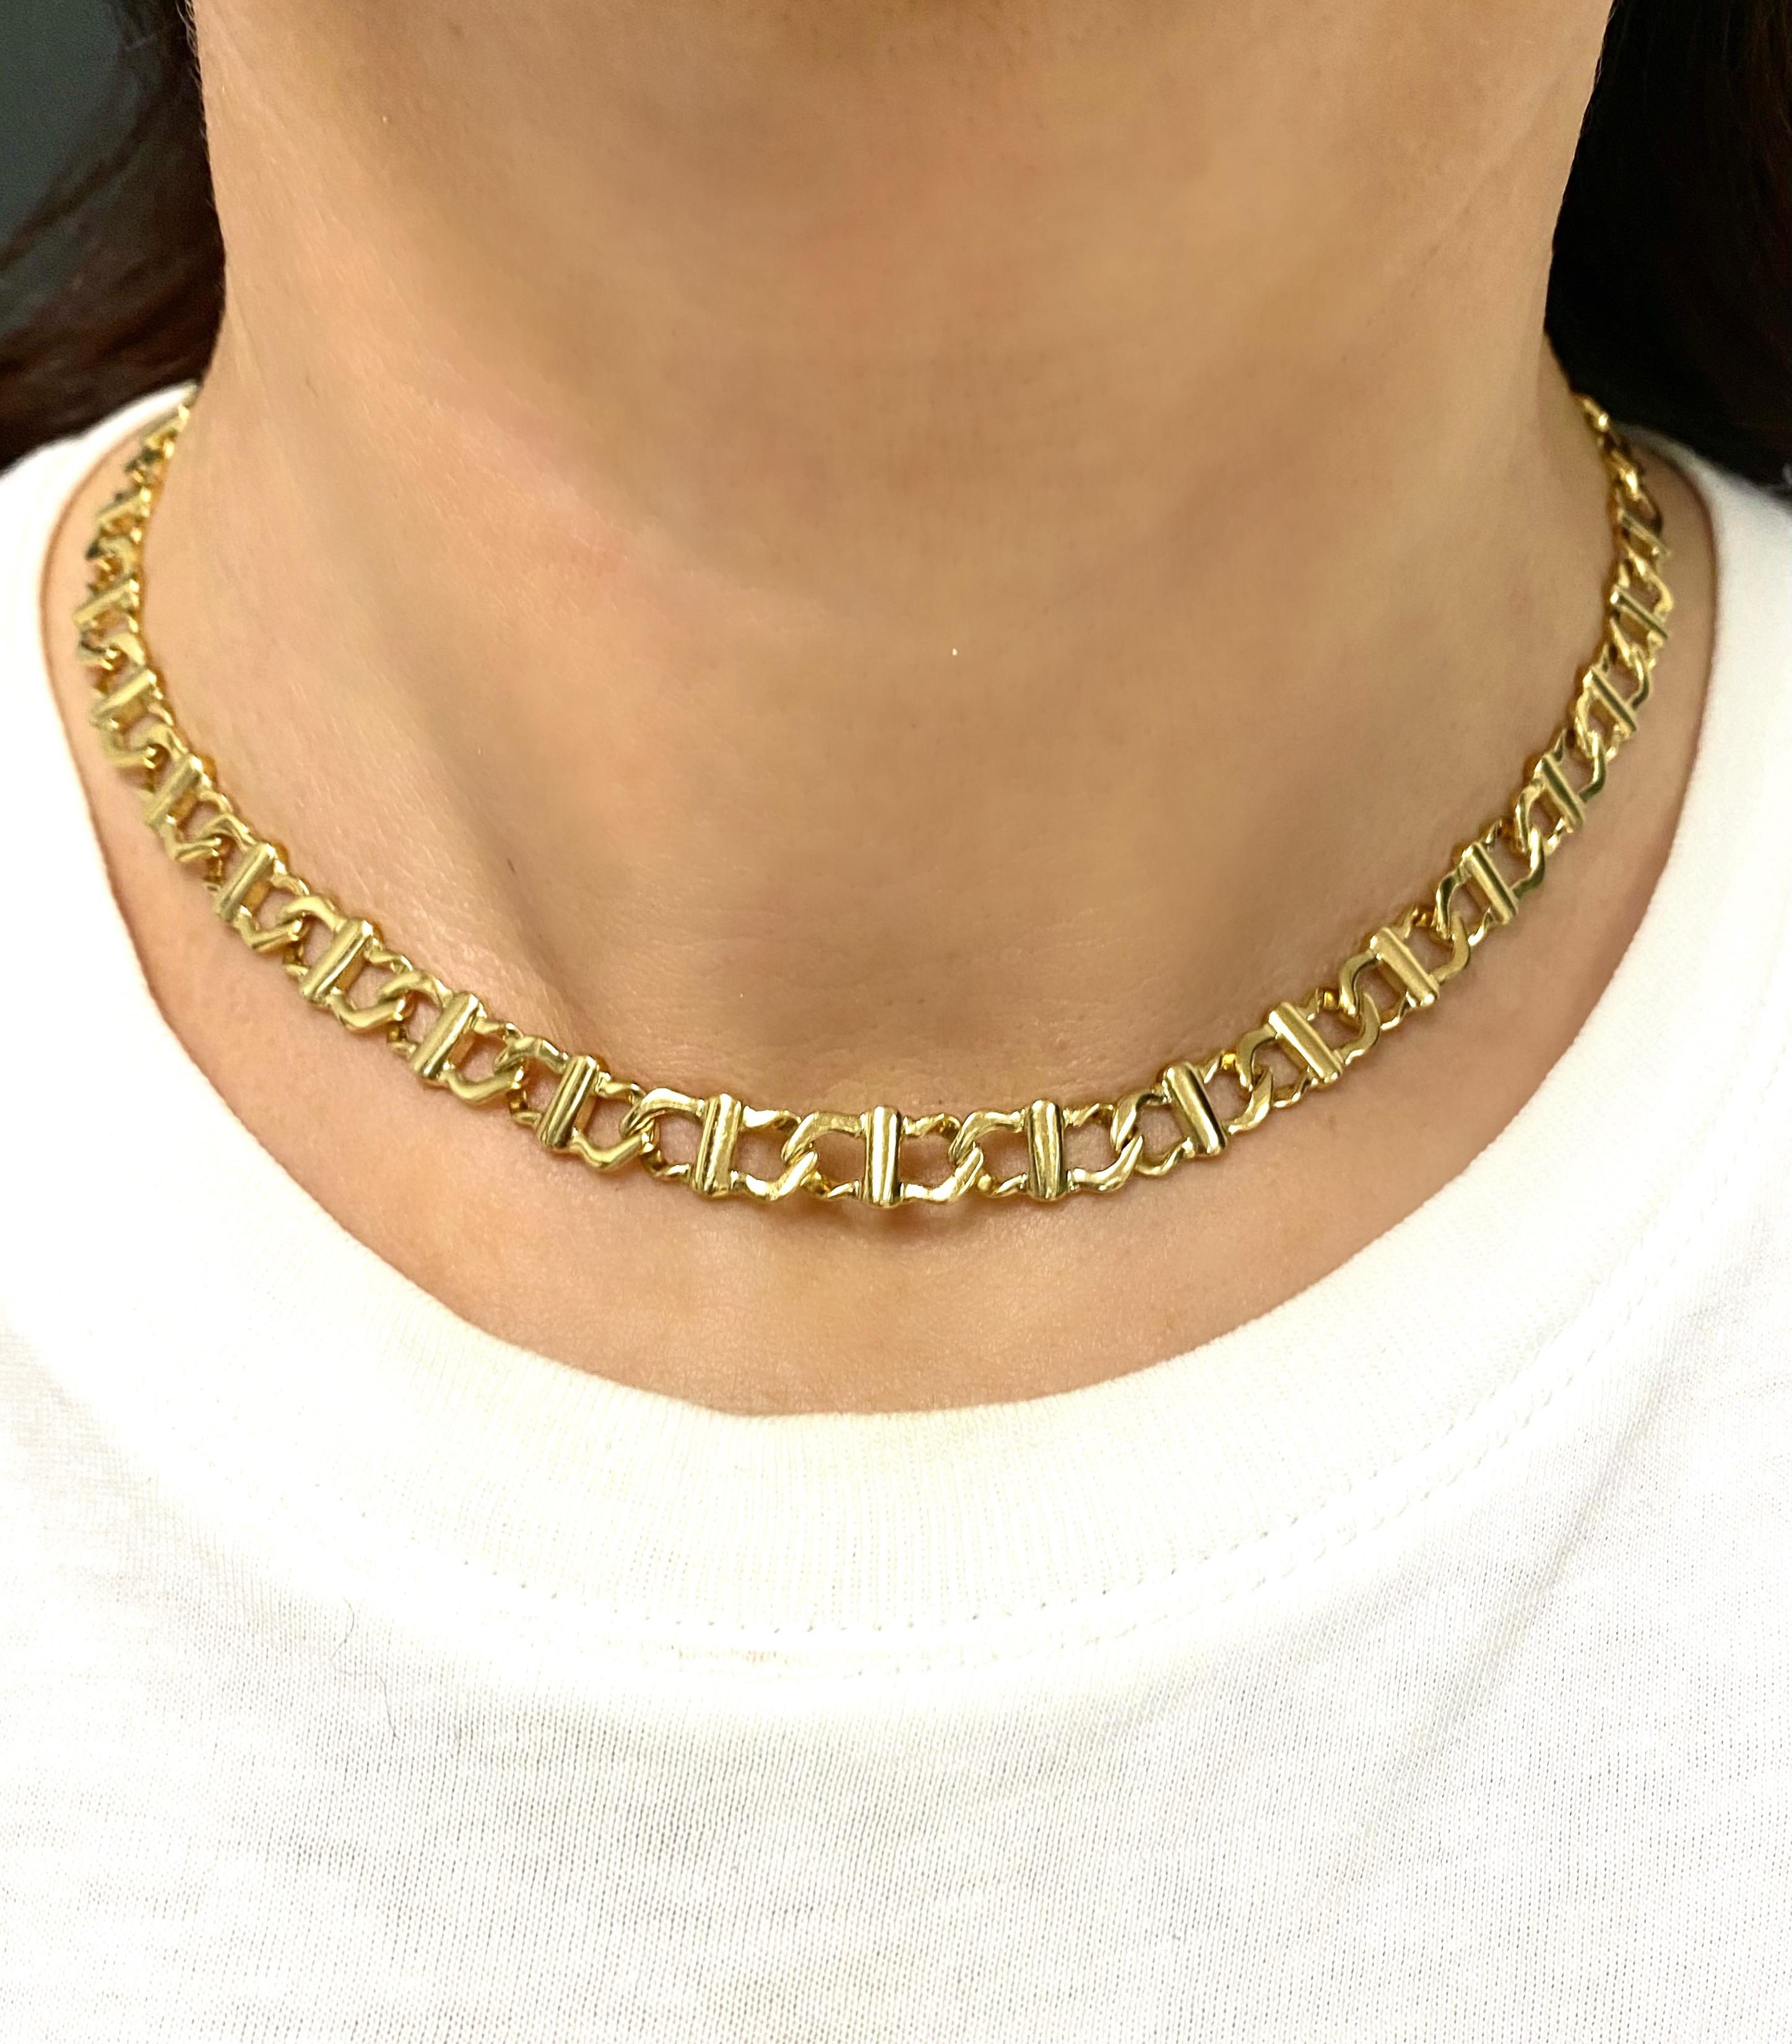 Un excellent collier à chaîne en or jaune de Cartier qui a été réalisé à la fin des années 1980.

Ce lien inhabituel est constitué de deux parties en forme de C emboîtées l'une dans l'autre et reliées par les barres verticales.

C'est un collier